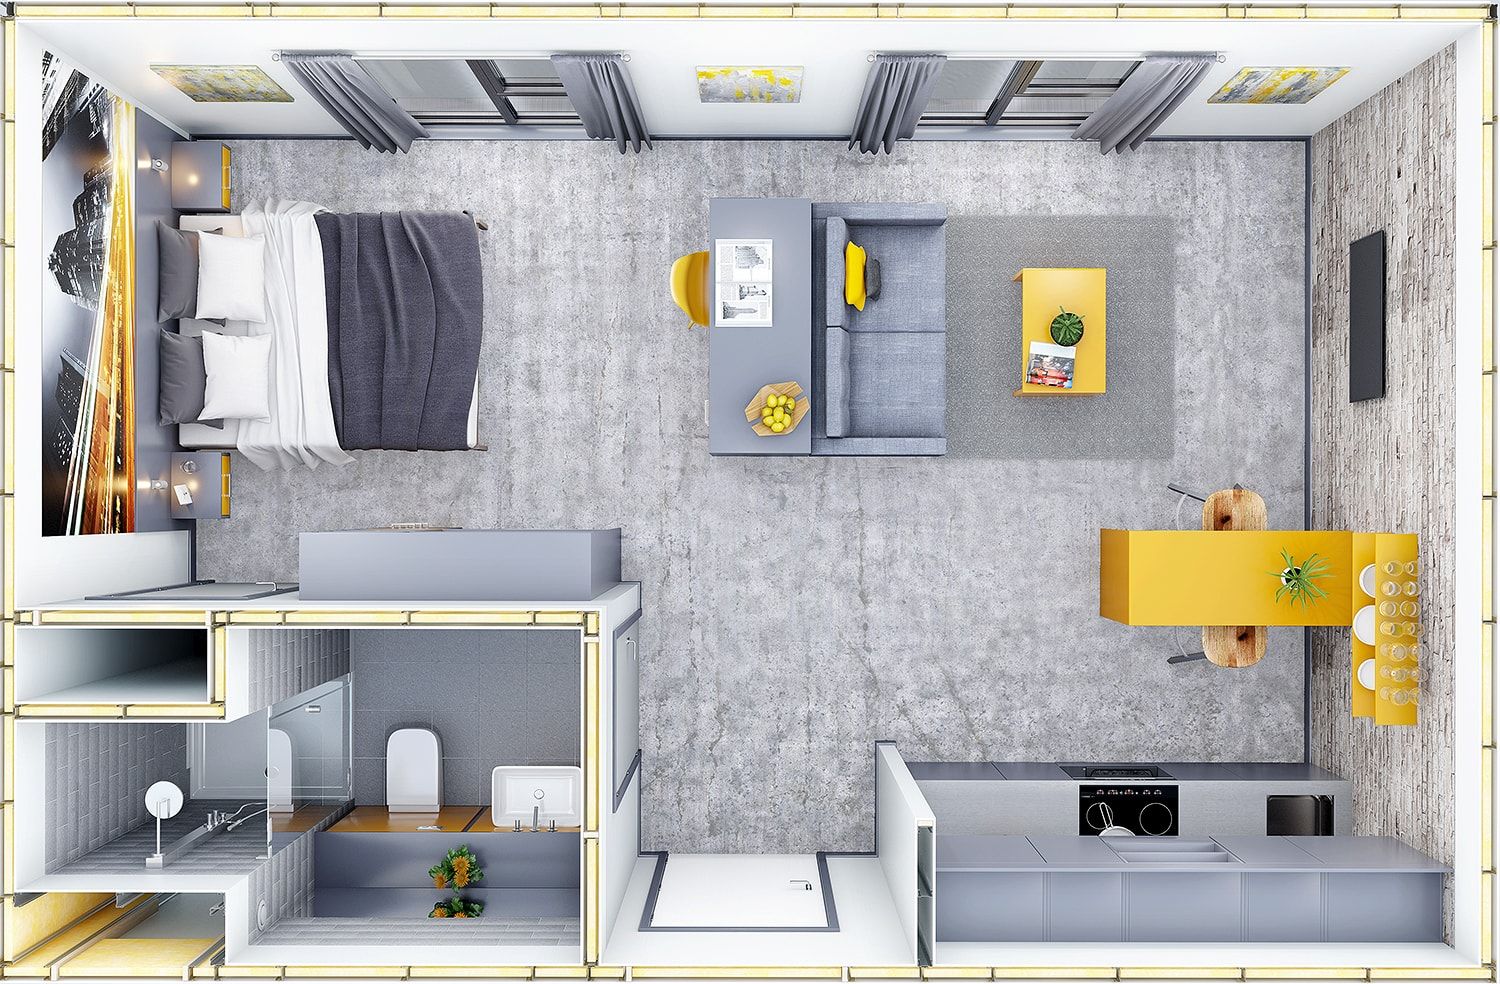 Plan view of studio Apartment CRISP3D Moderne Schlafzimmer Ziegel internalCGI,visualisation,CGI,3dvisualisation,studio